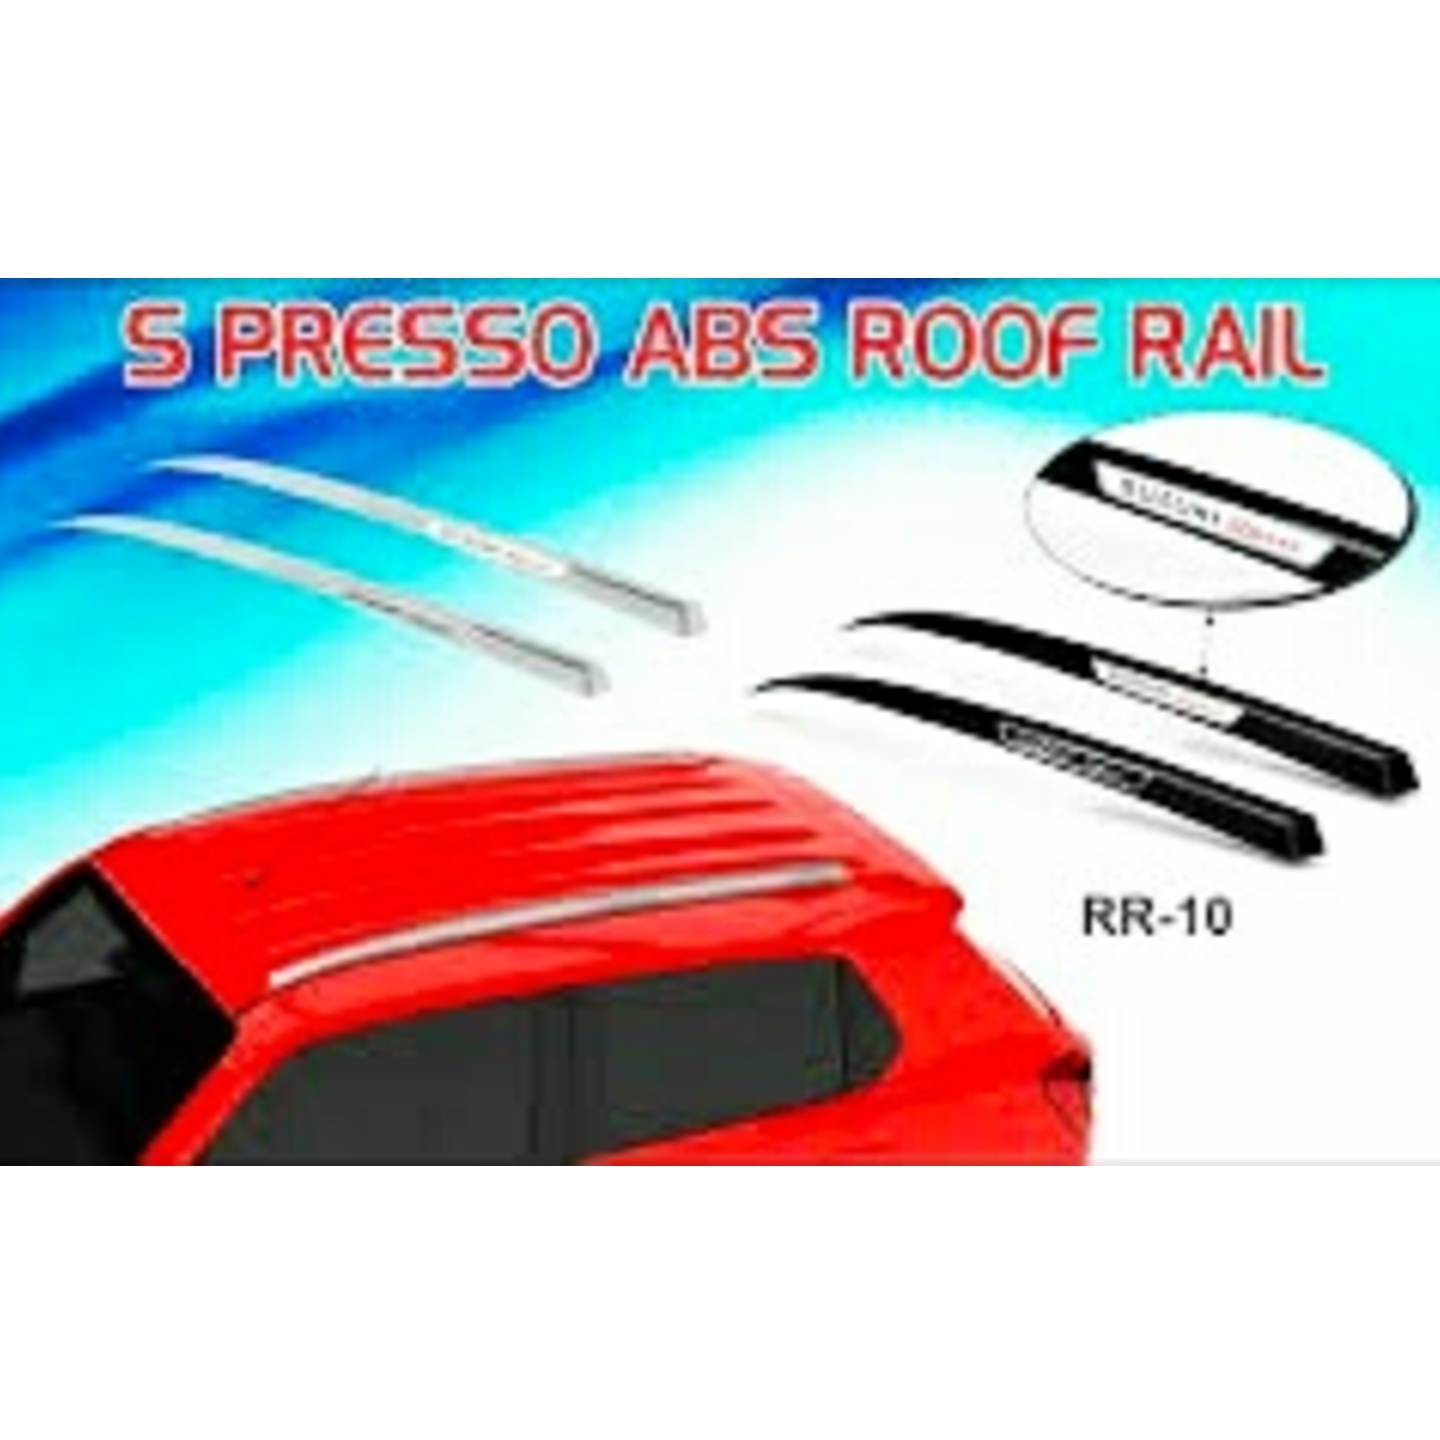 S presso Roof Rail